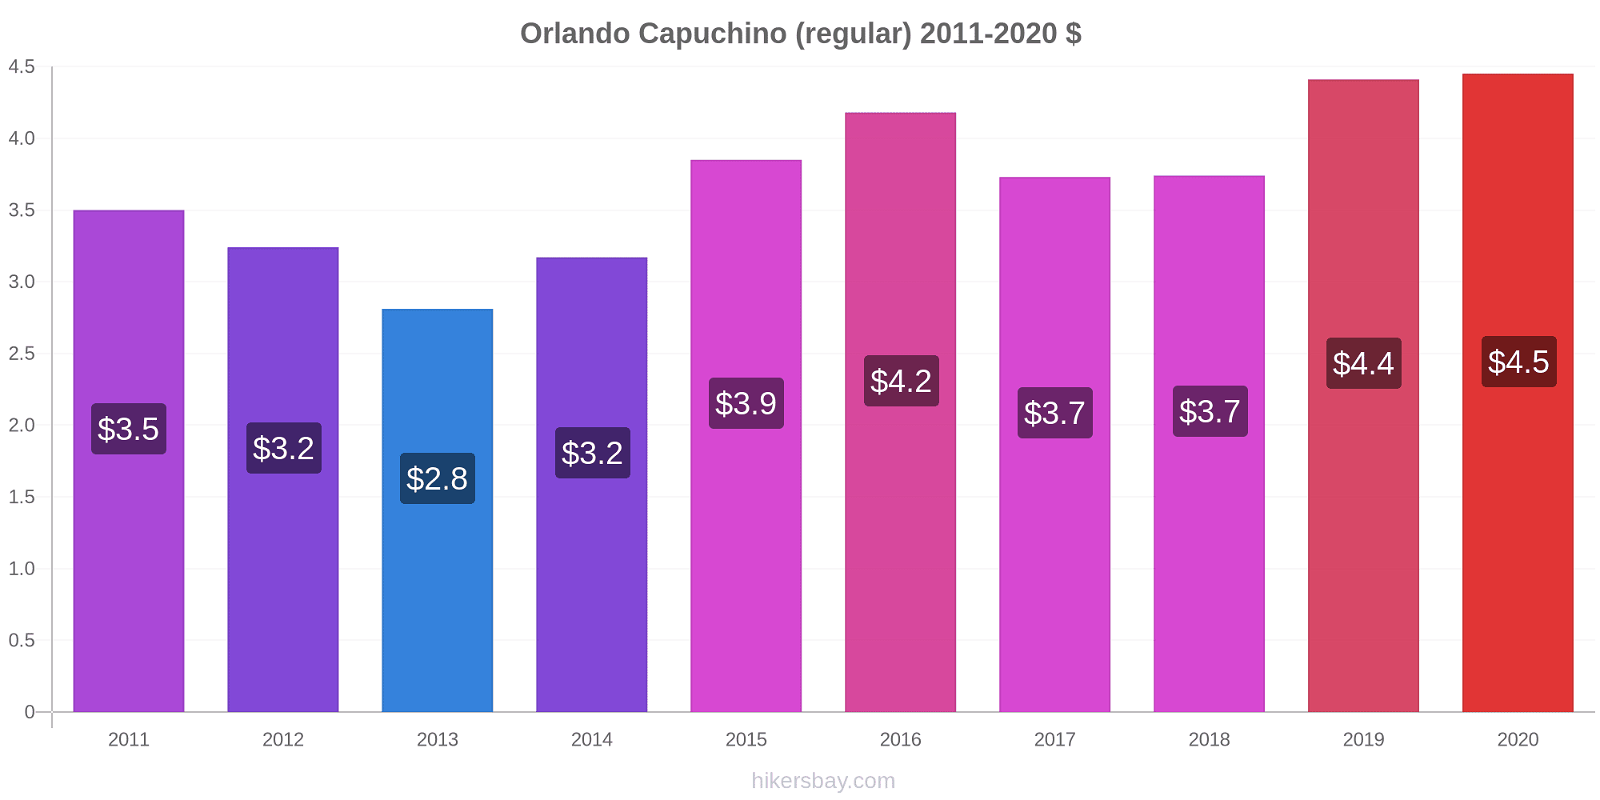 Orlando cambios de precios Capuchino (regular) hikersbay.com